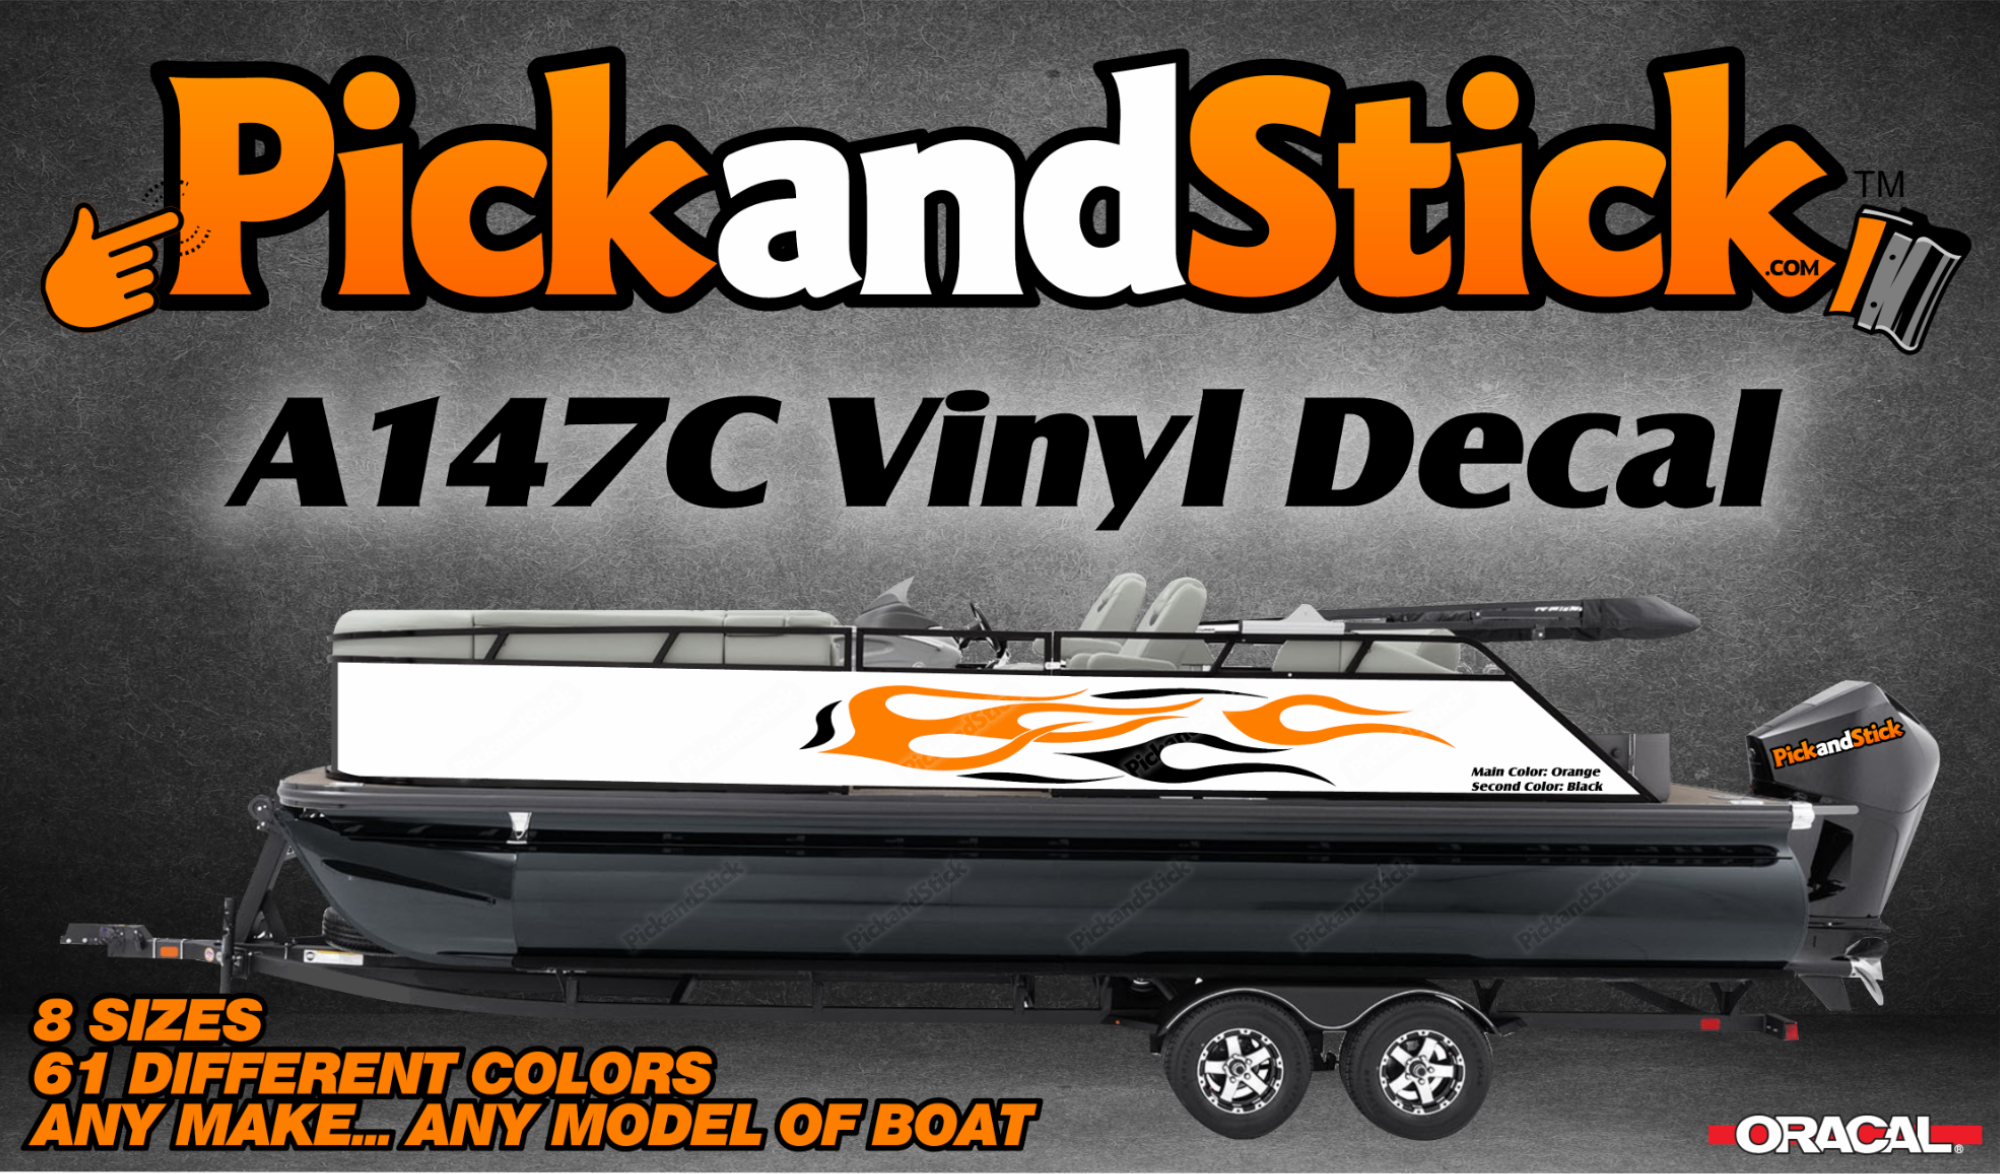 Boat Vinyl Decal A147C - PickandStickcom